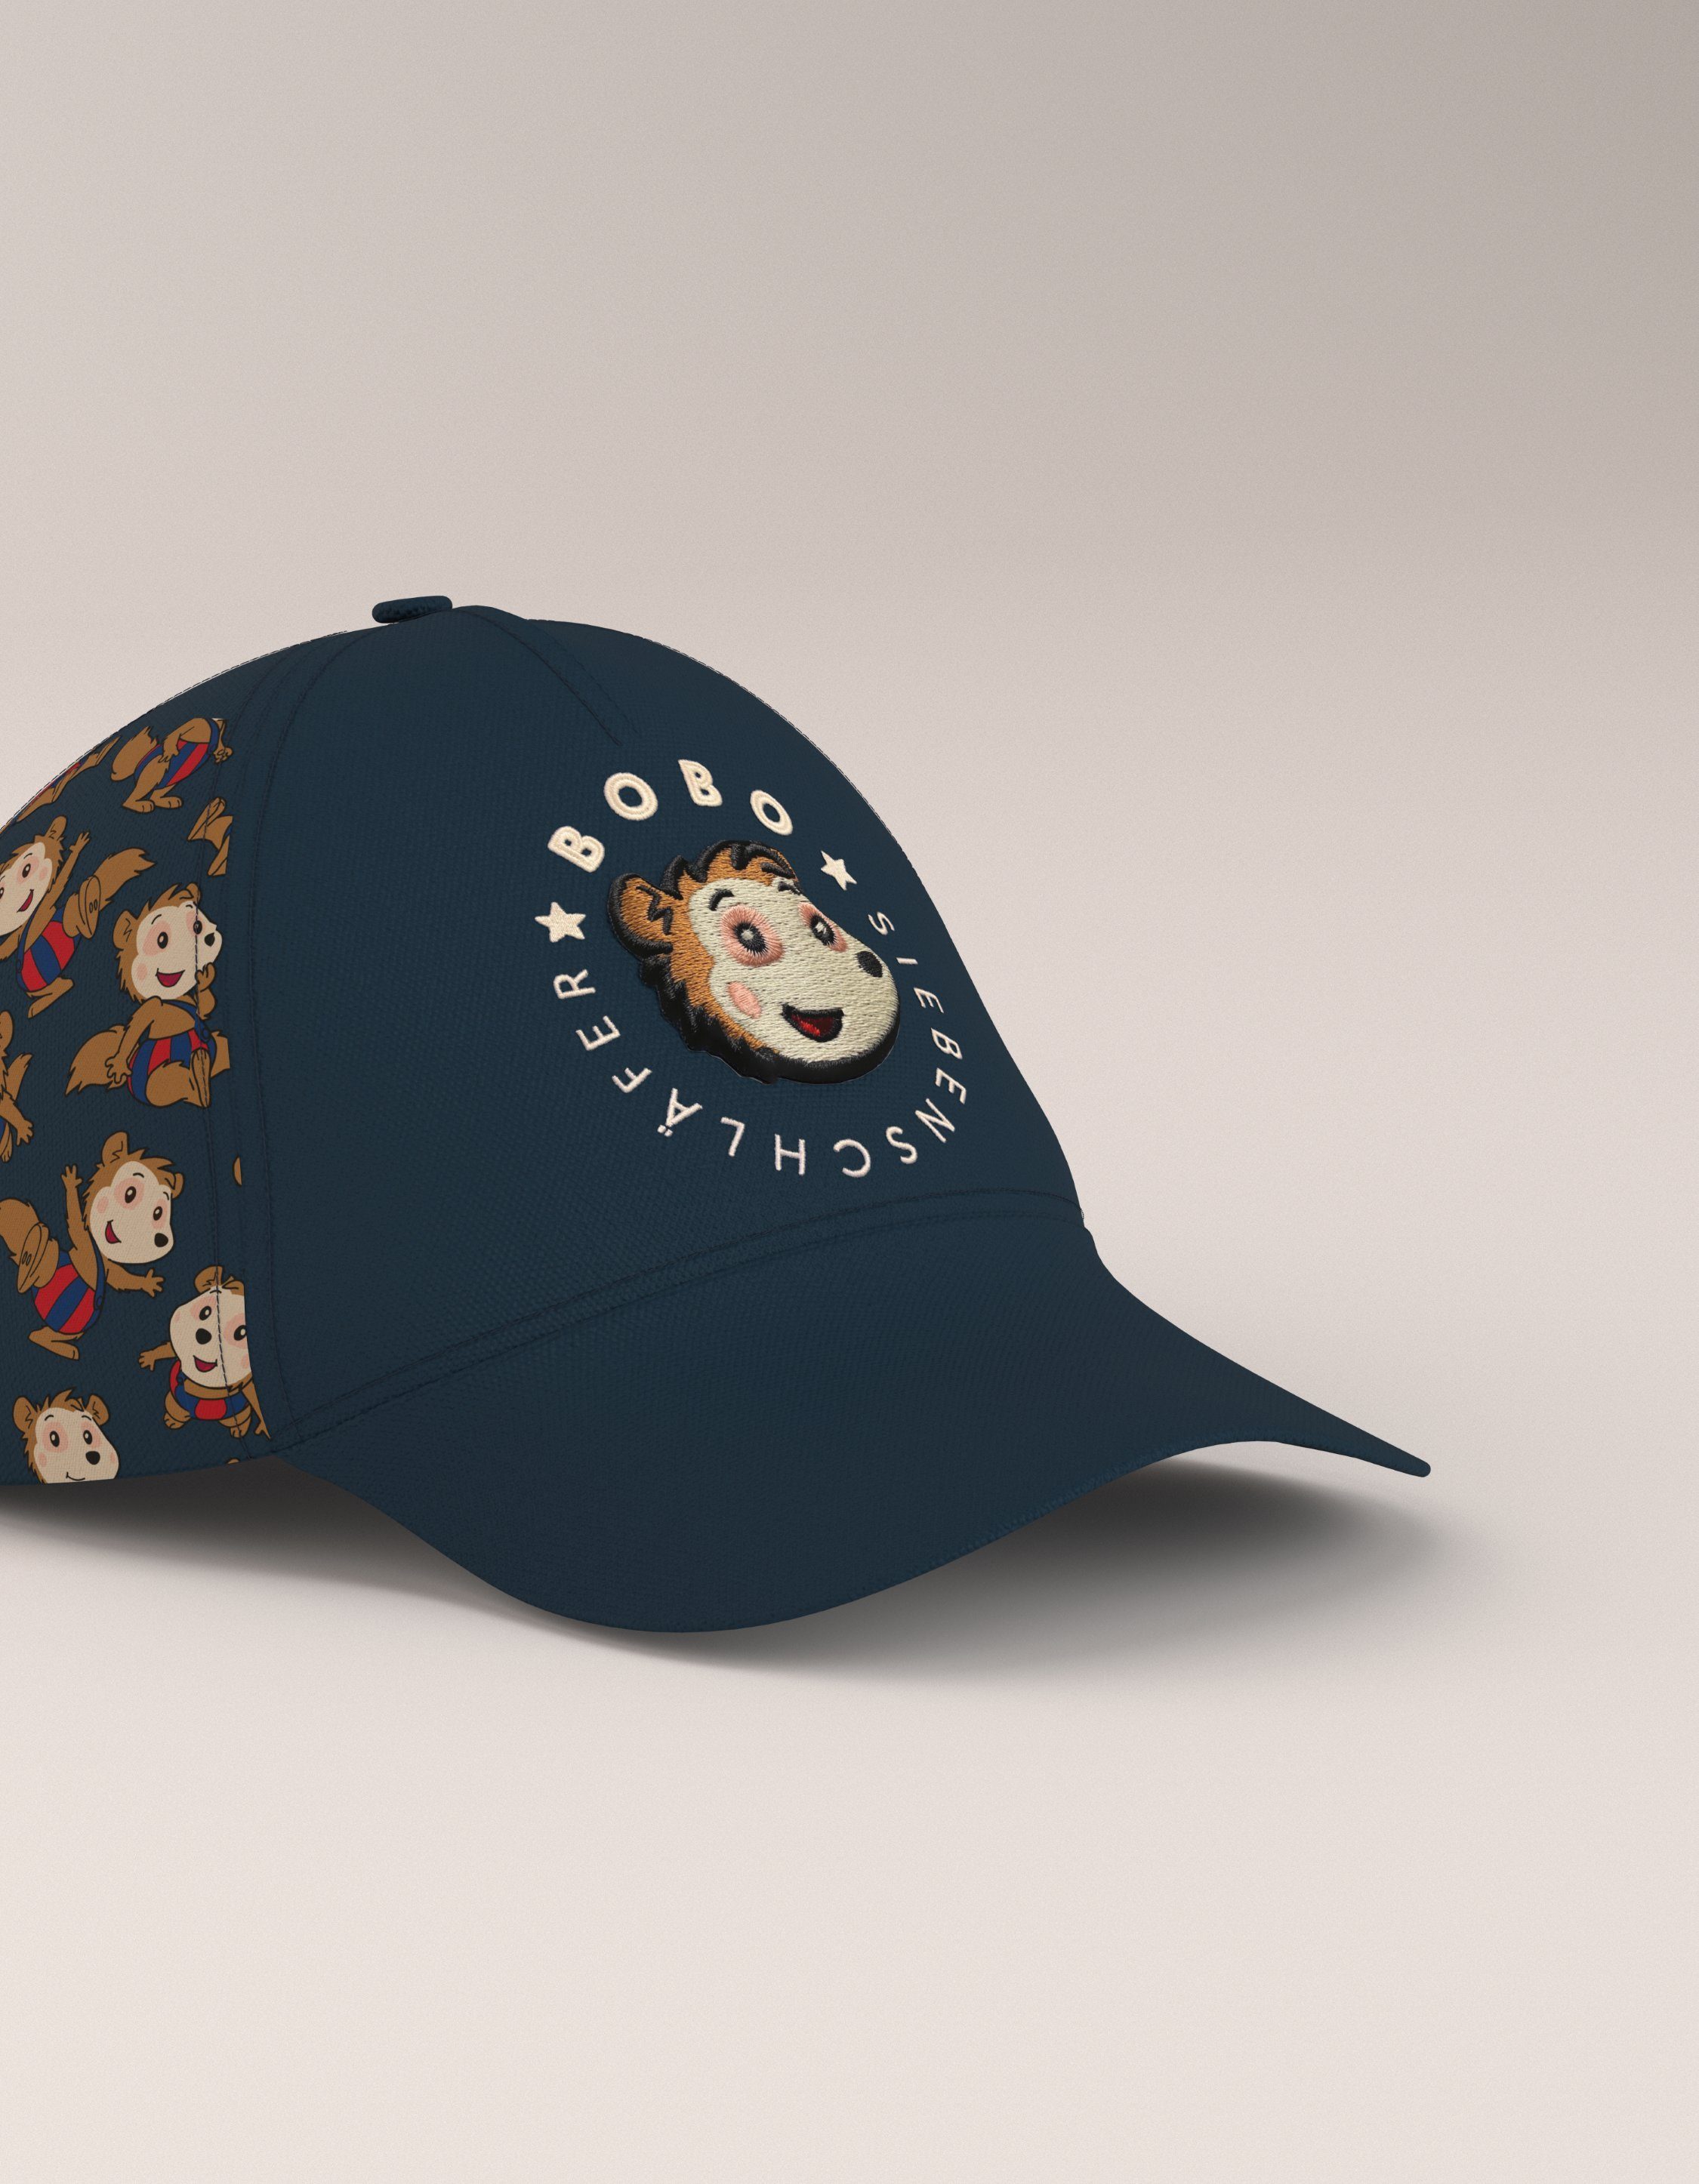 Baby Baseball Caps online kaufen » Kleinkinder Basecaps | OTTO